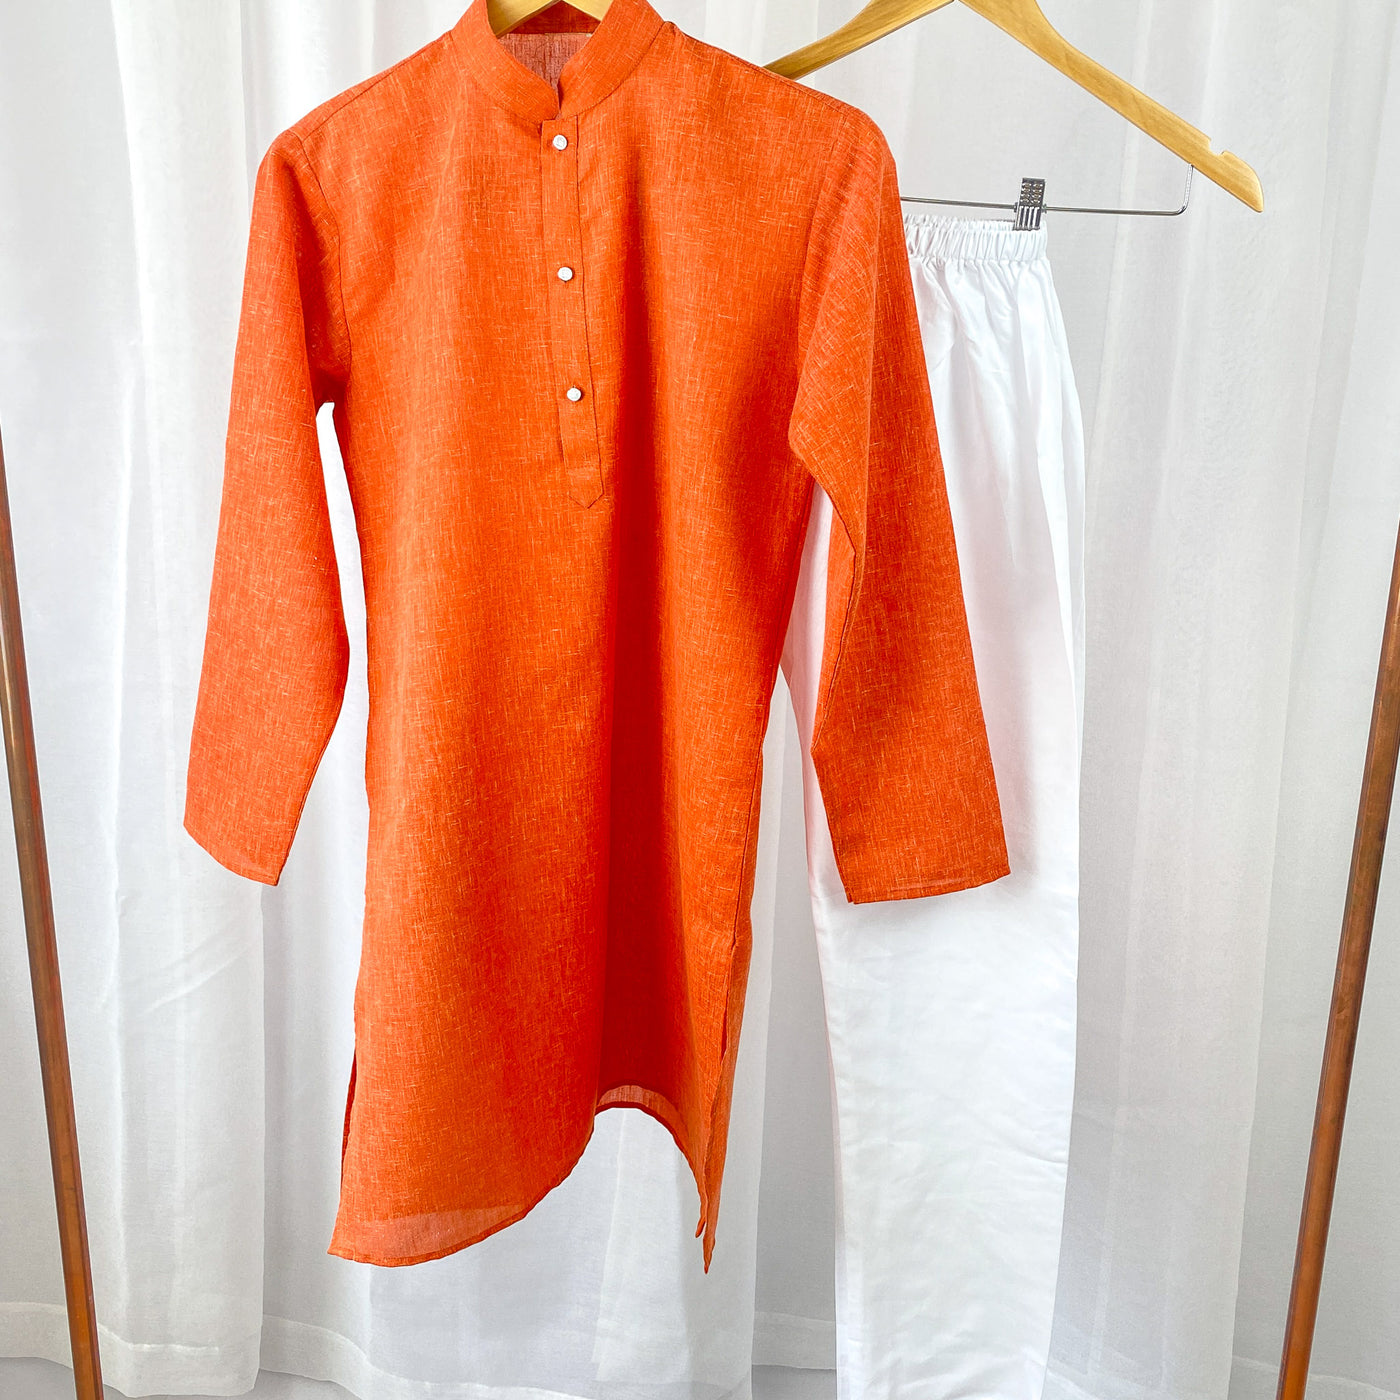 SAI - Plain Orange Cotton Kurta Pajama